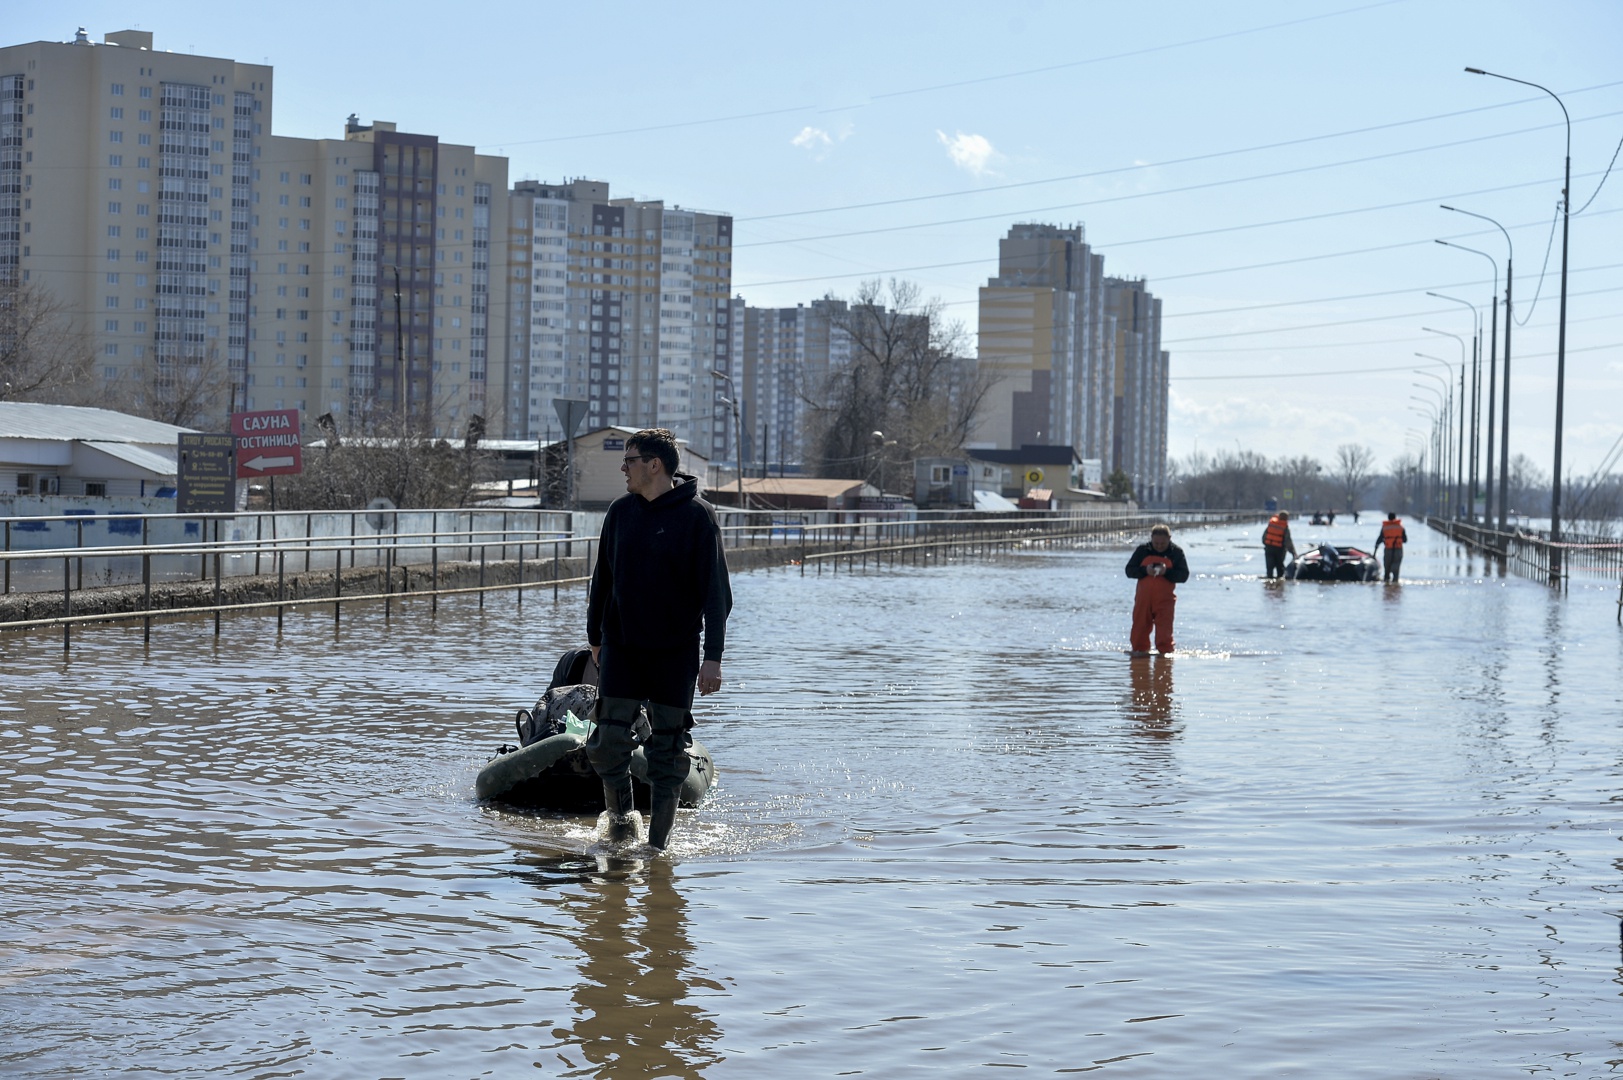 las inundaciones dan tregua a oremburgo, pero empeora la situación en otras dos regiones rusas